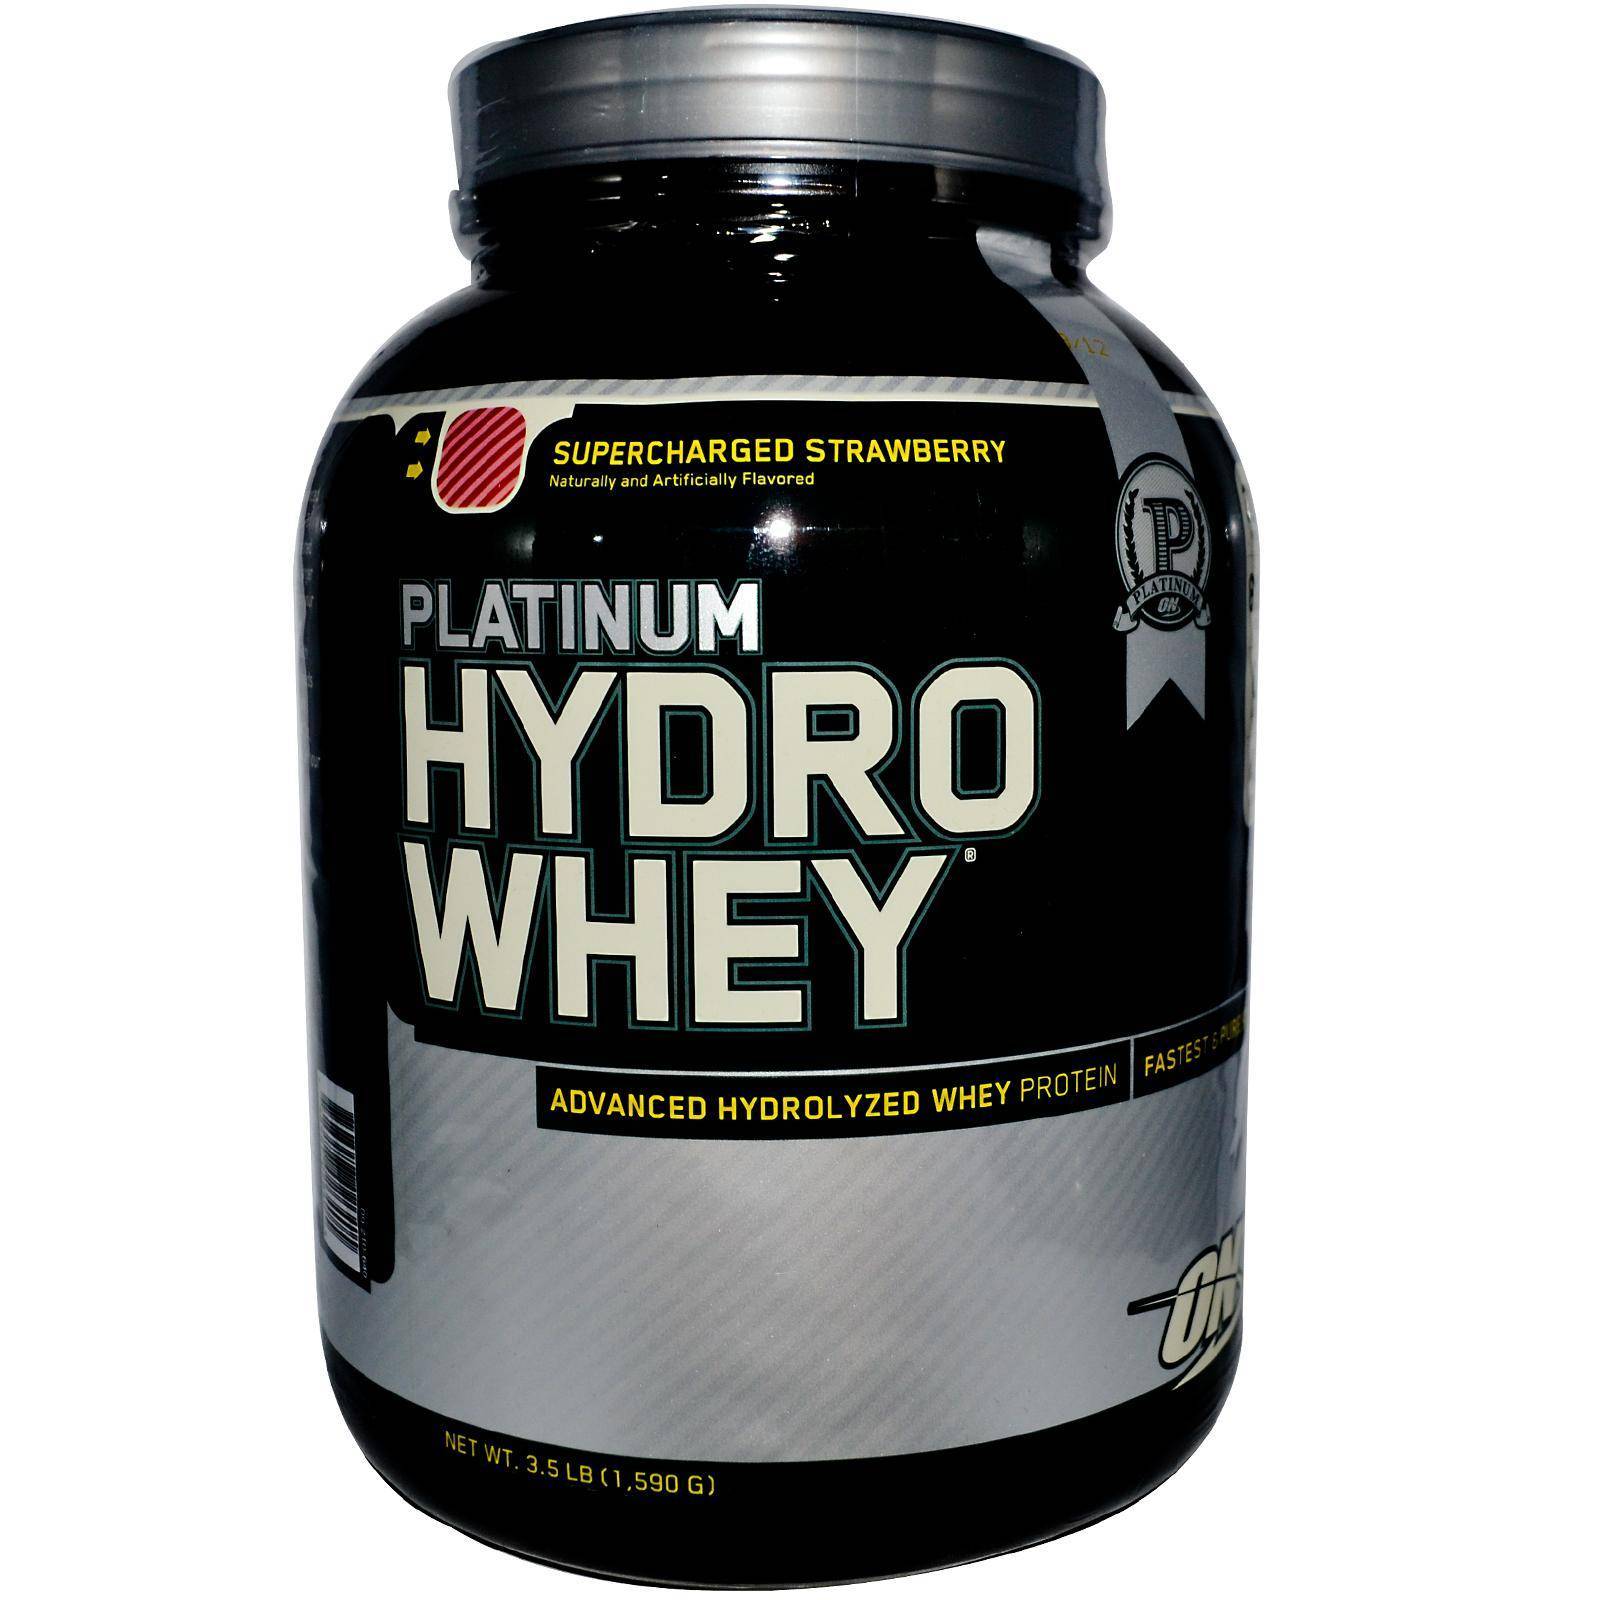 Как правильно принимать протеин platinum hydro whey от optimum nutrition